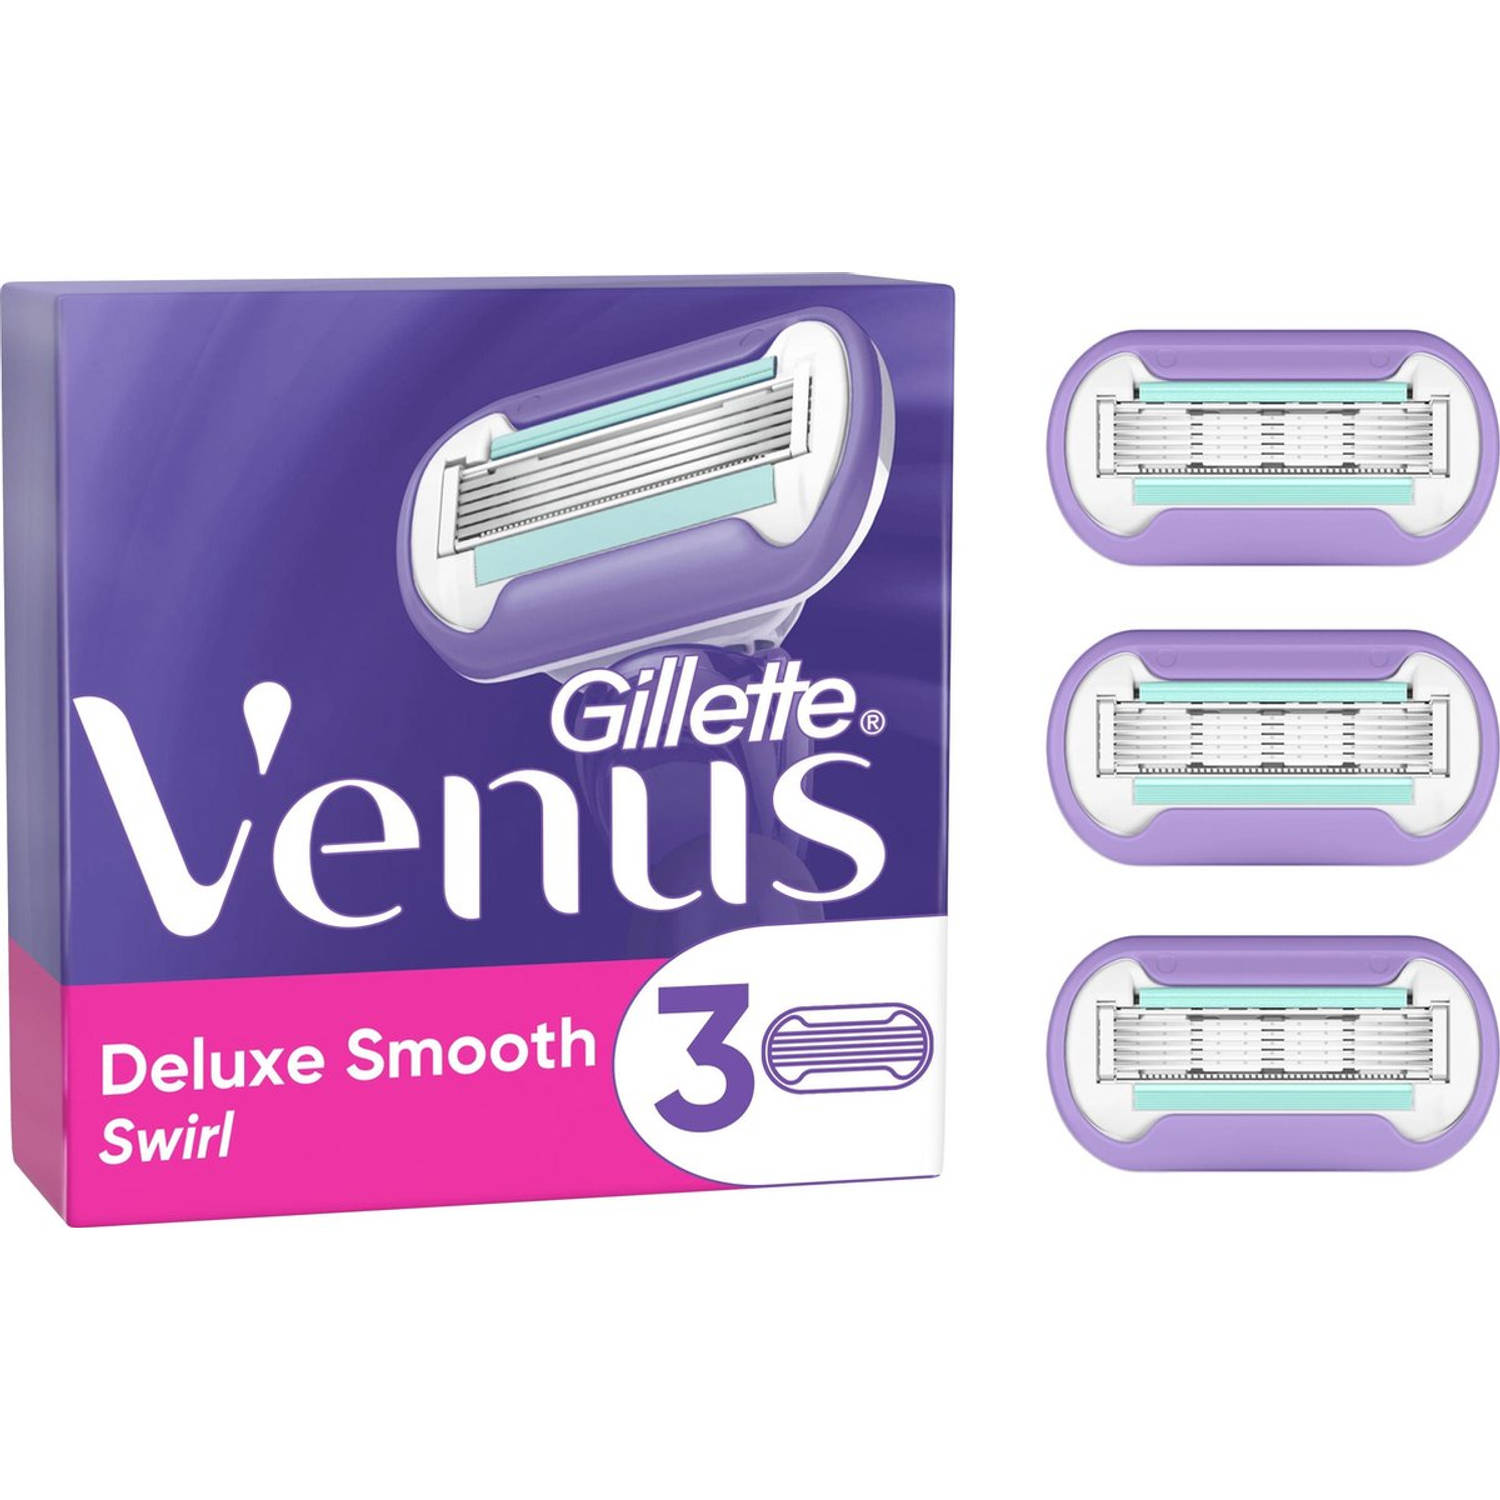 Gillette Venus Deluxe Smooth Swirl Scheermesjes 3 stuks